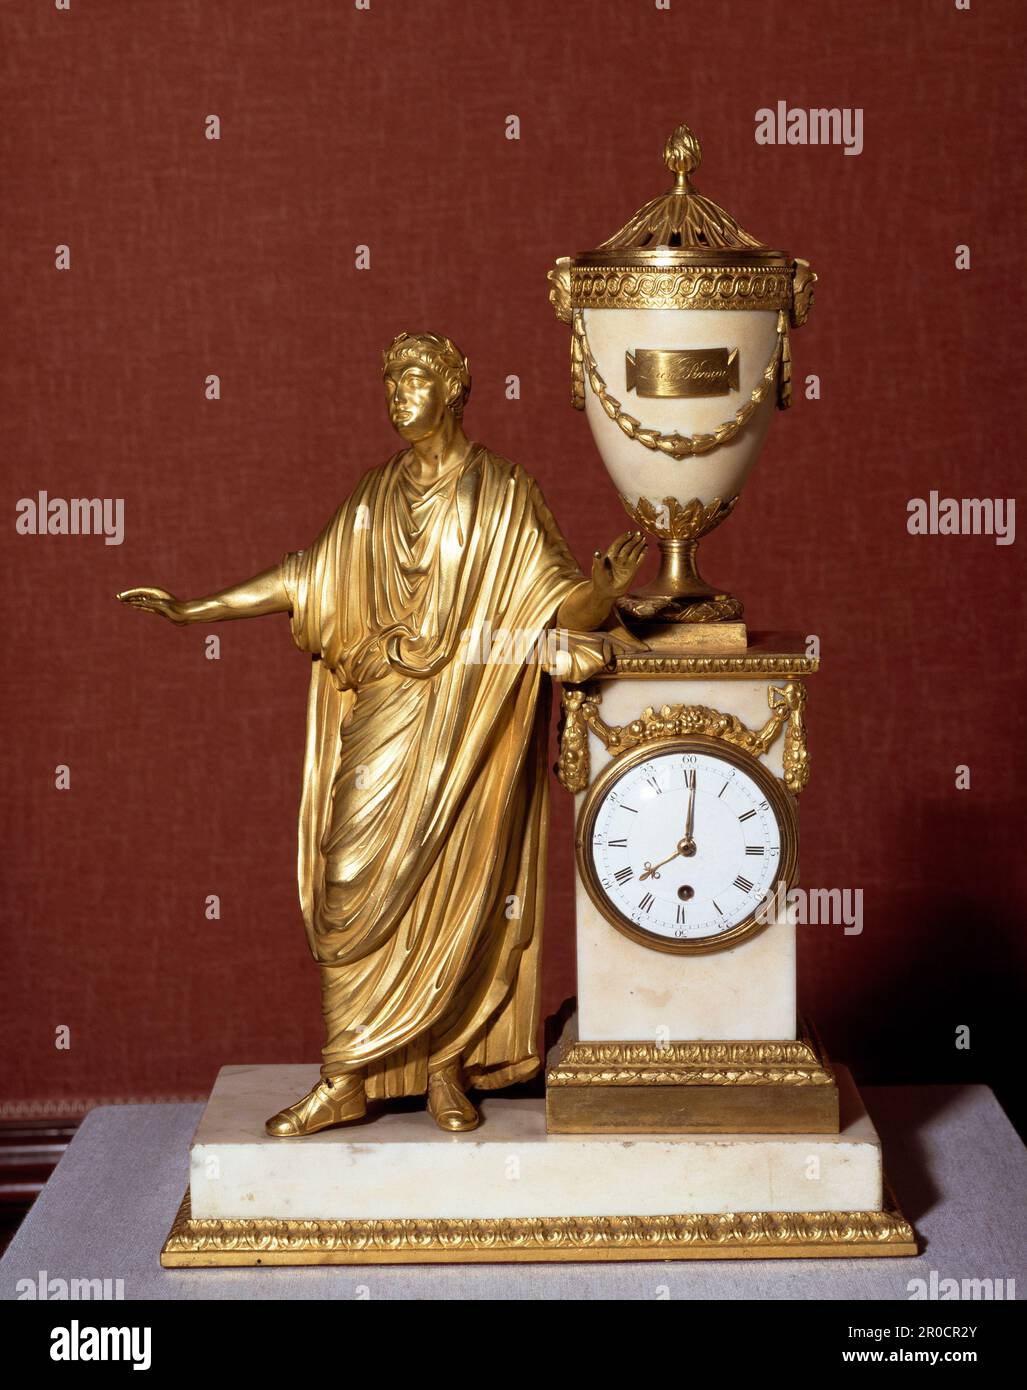 Der Titus Clockcase, 1776-78. Hersteller: Boulton & Fothergill... Die Partnerschaft zwischen Matthew Boulton und John Fothergill begann 1762. Sie haben eine Reihe verschiedener Produkte bei der Soho Manufactory entwickelt, aber sie waren am besten für ihre Ormolu-Halterungen bekannt. Innerhalb weniger Jahre hatten sie den Ruf gewonnen, die größten Hersteller von dekorativem Ormolu ihrer Zeit zu sein. Titus, der hier gezeigt wurde, war der älteste Sohn des römischen Kaisers Vespasian, der AD79 als sein Vater auftrat und einer der beliebtesten Herrscher Roms wurde. Stockfoto